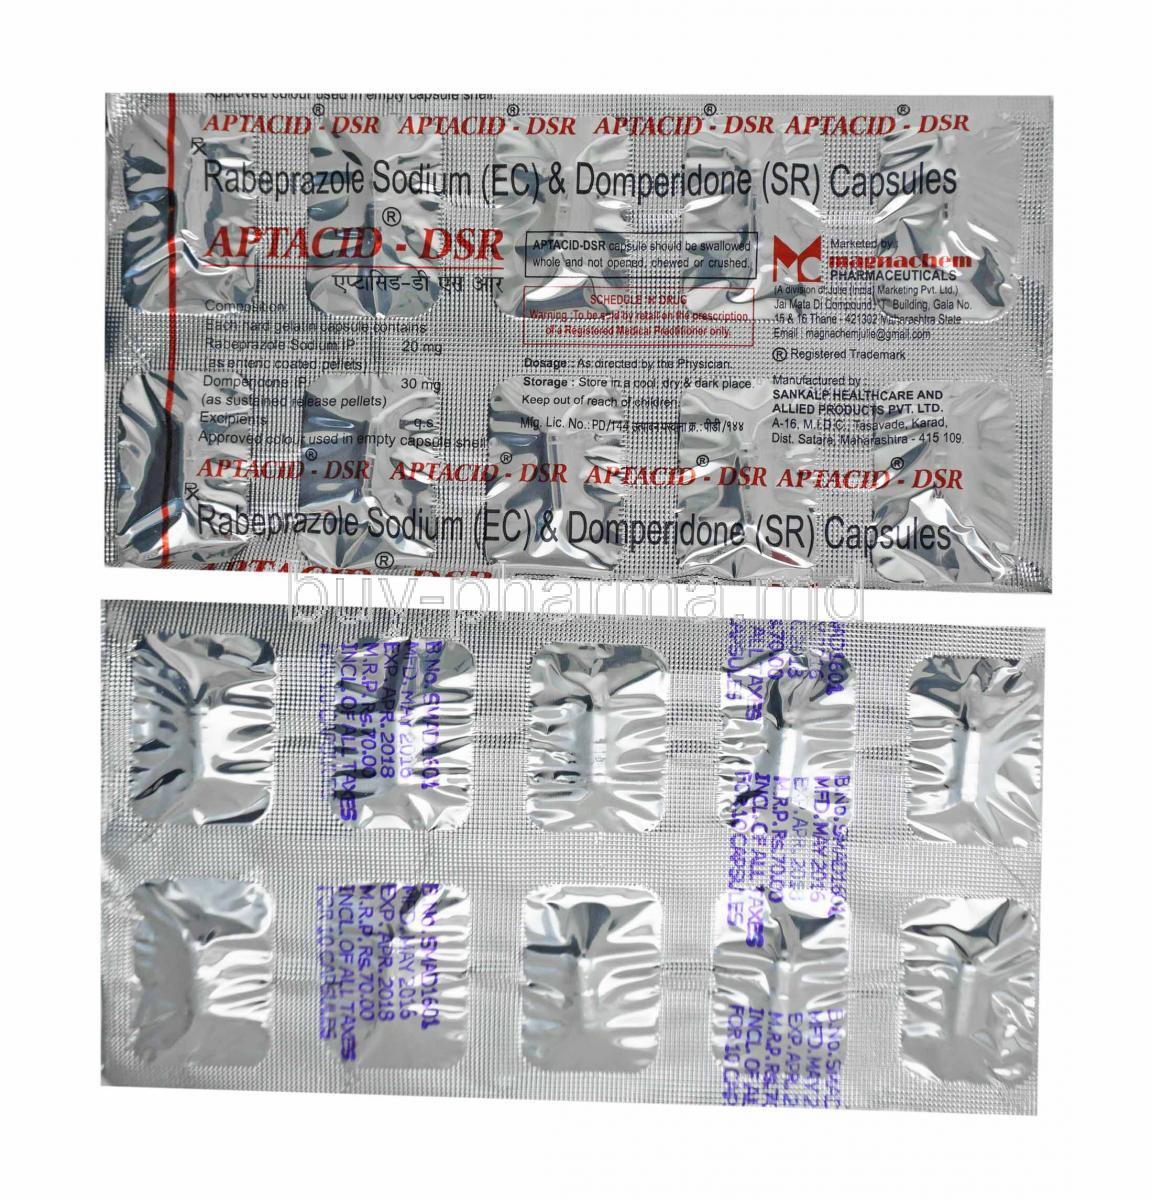 Aptacid-DSR, Rabeprazole and Domperidone capsules